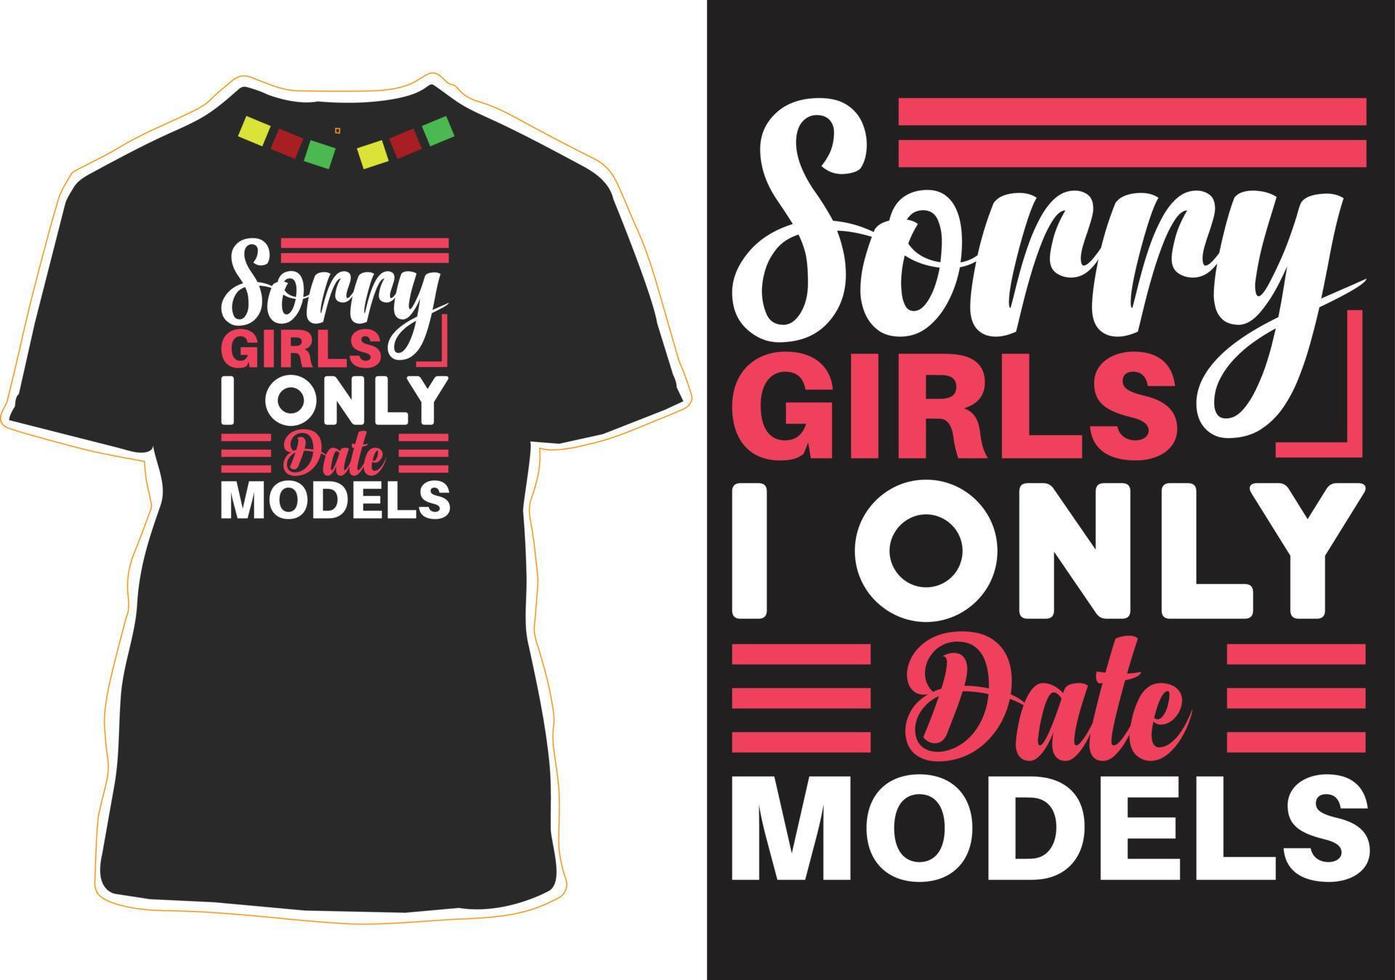 Tut mir leid, Mädchen, ich datiere nur Modelle Typografie-T-Shirt-Design vektor